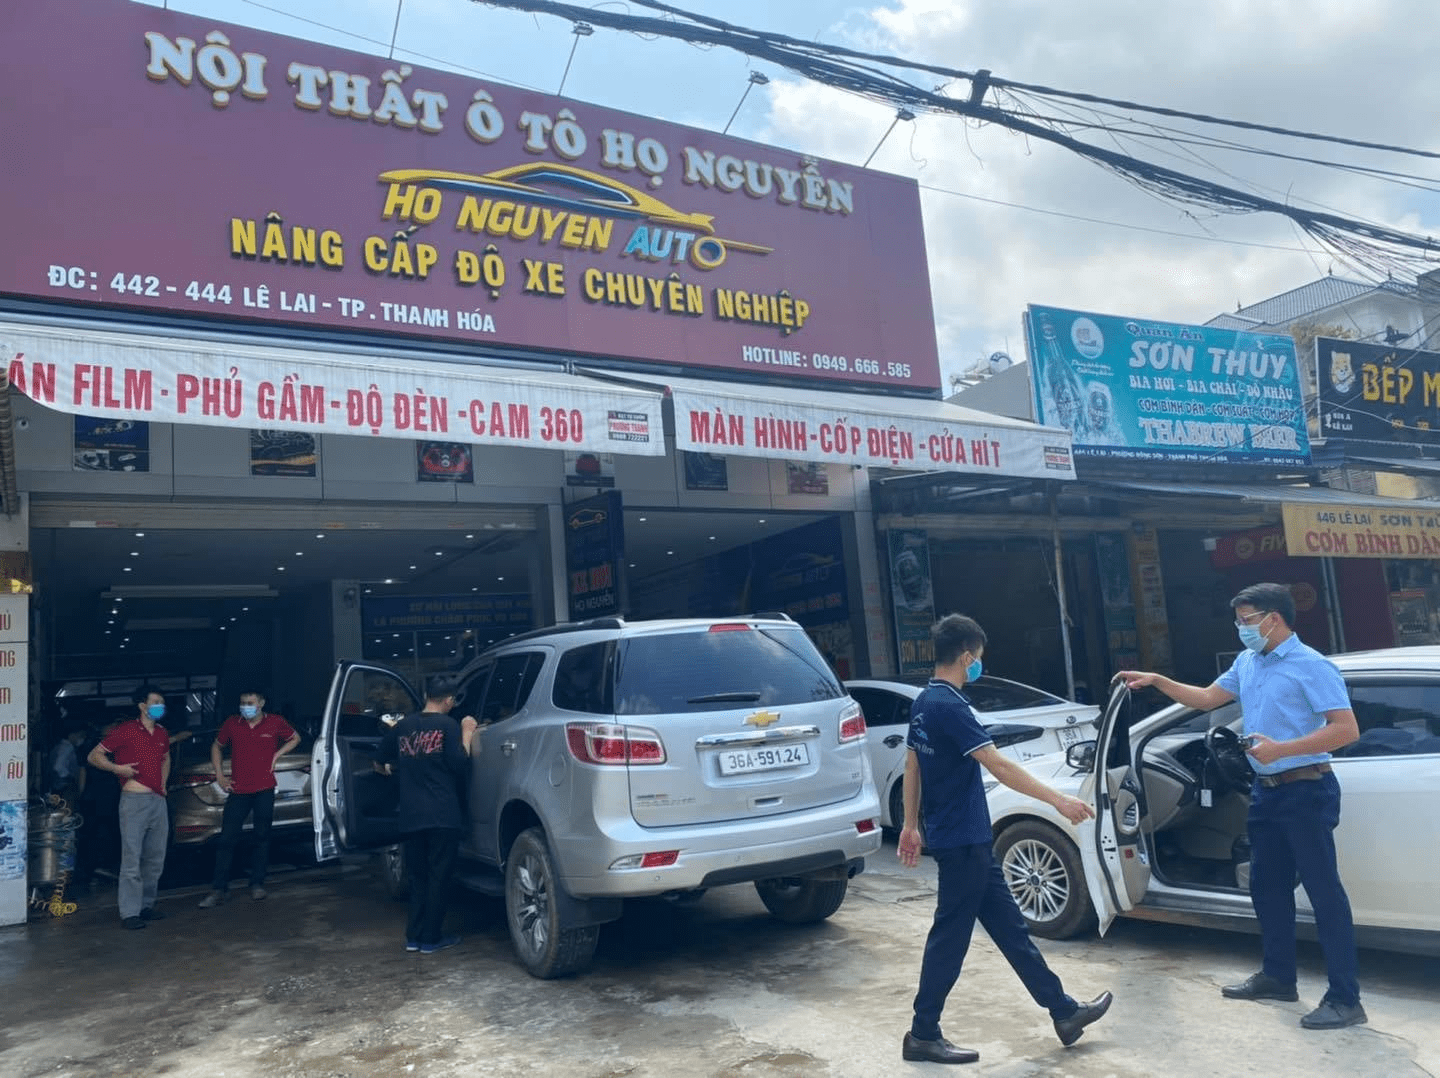 Địa chỉ mua bán xe ô tô cũ uy tín tại Thanh Hóa 2023  Thành Kính Auto